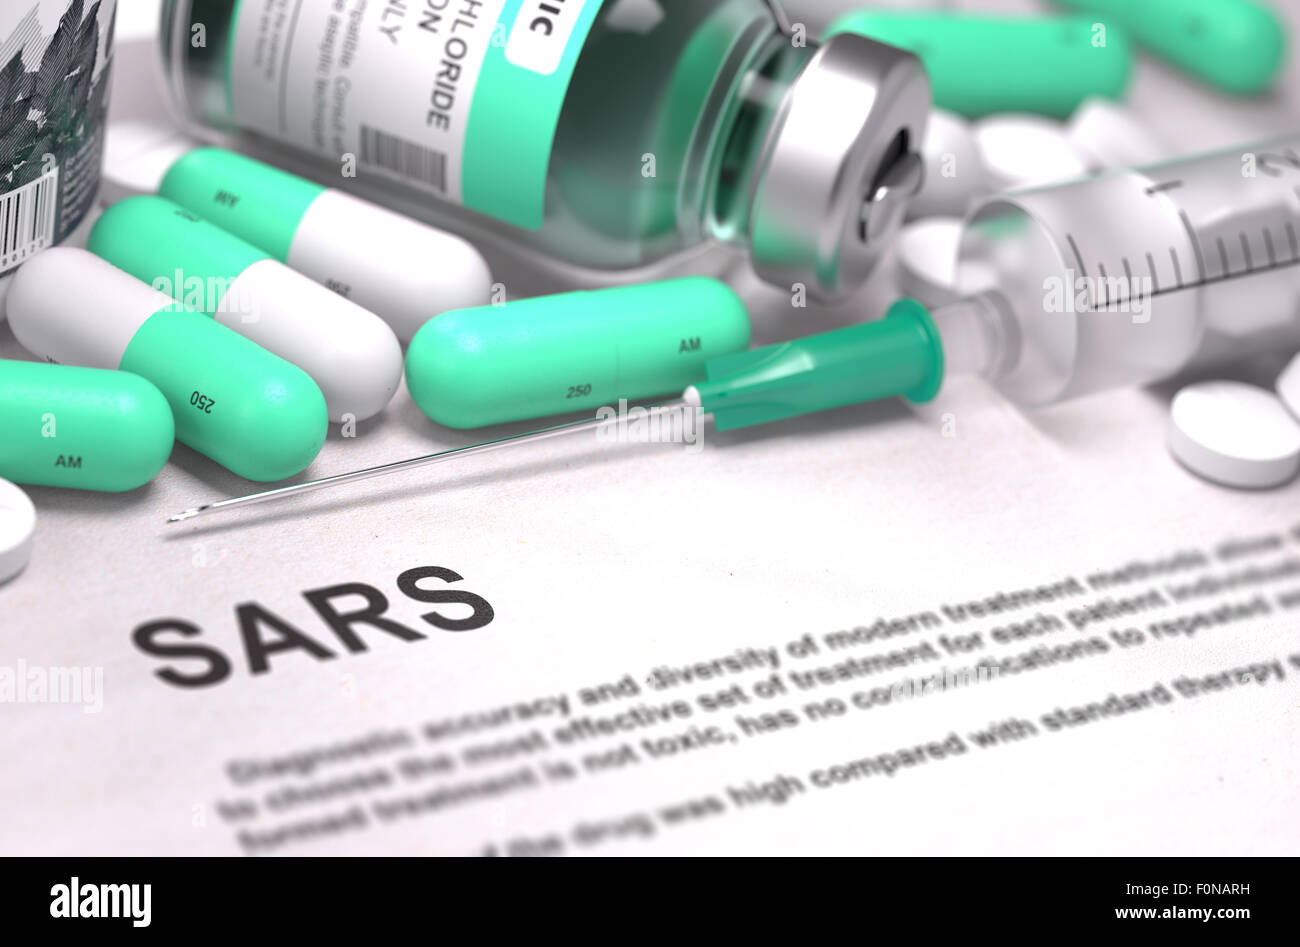 Diagnosi - LA SARS. Concetto medico con sfondo sfocato. Foto Stock